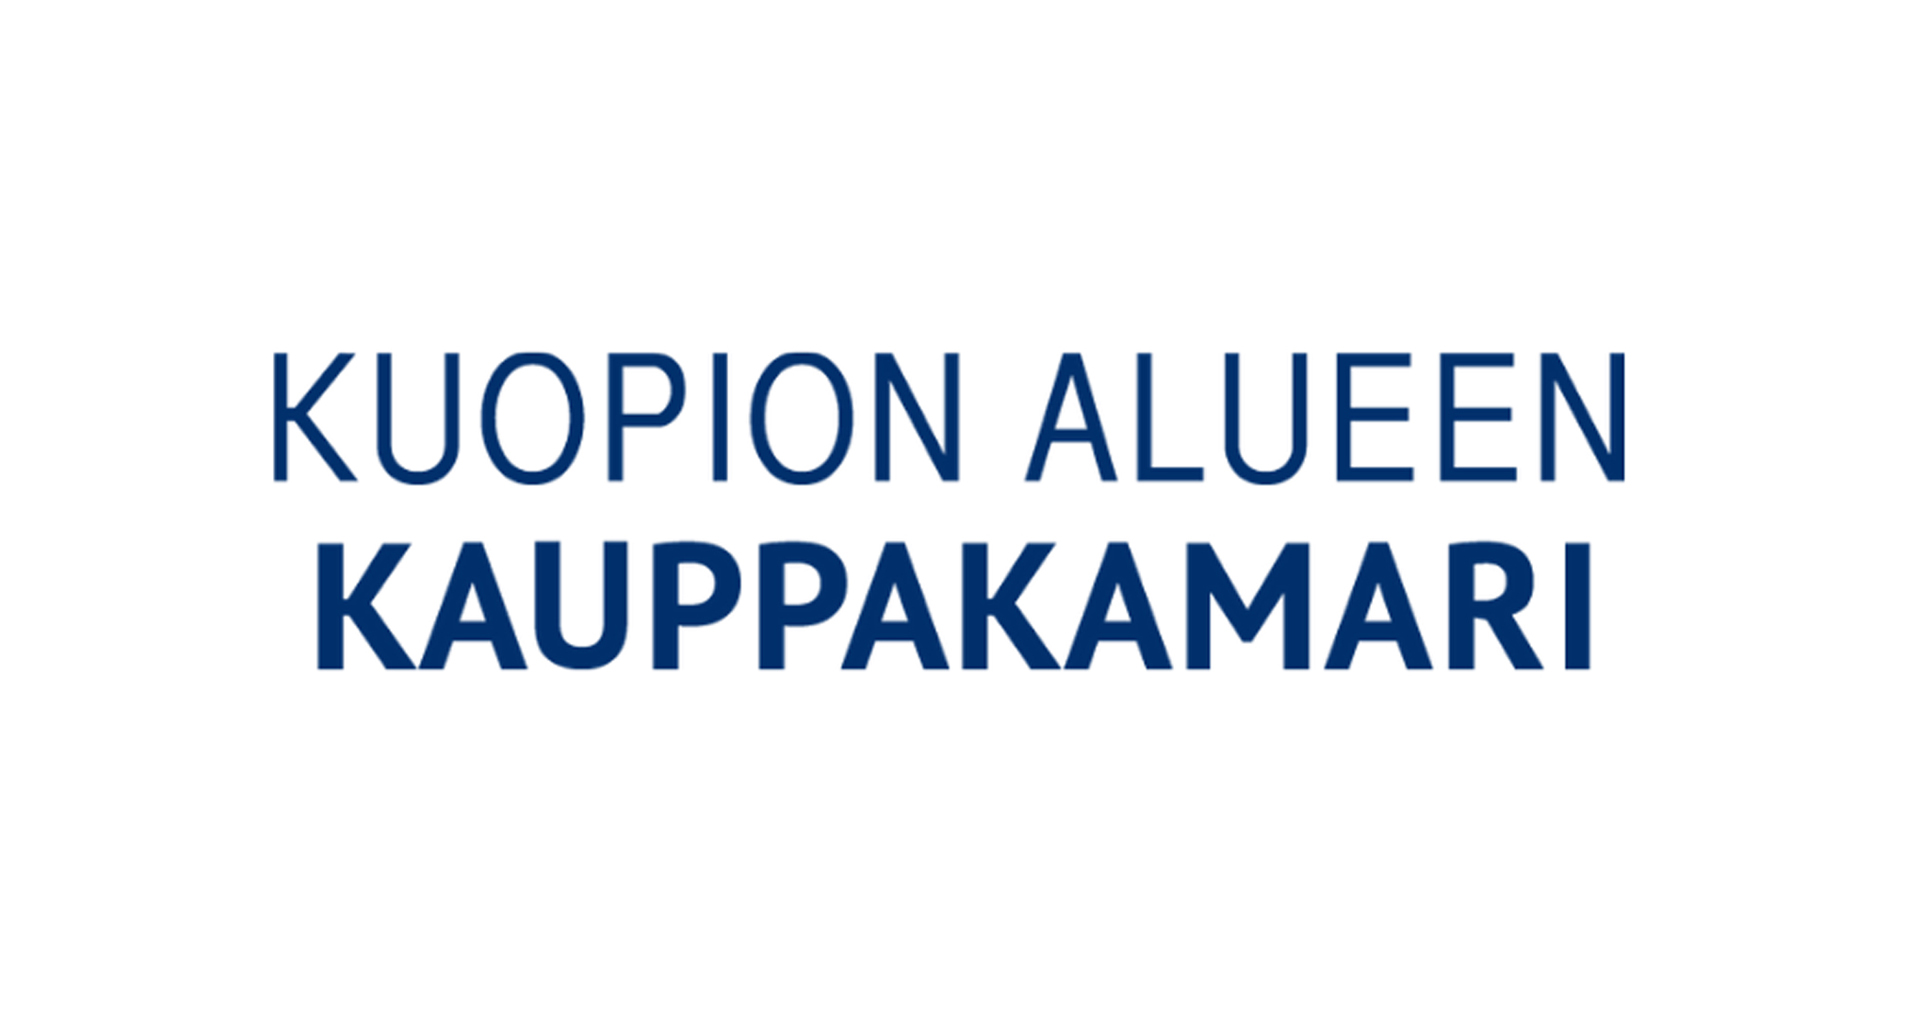 Kuopion alueen kauppakamari logo